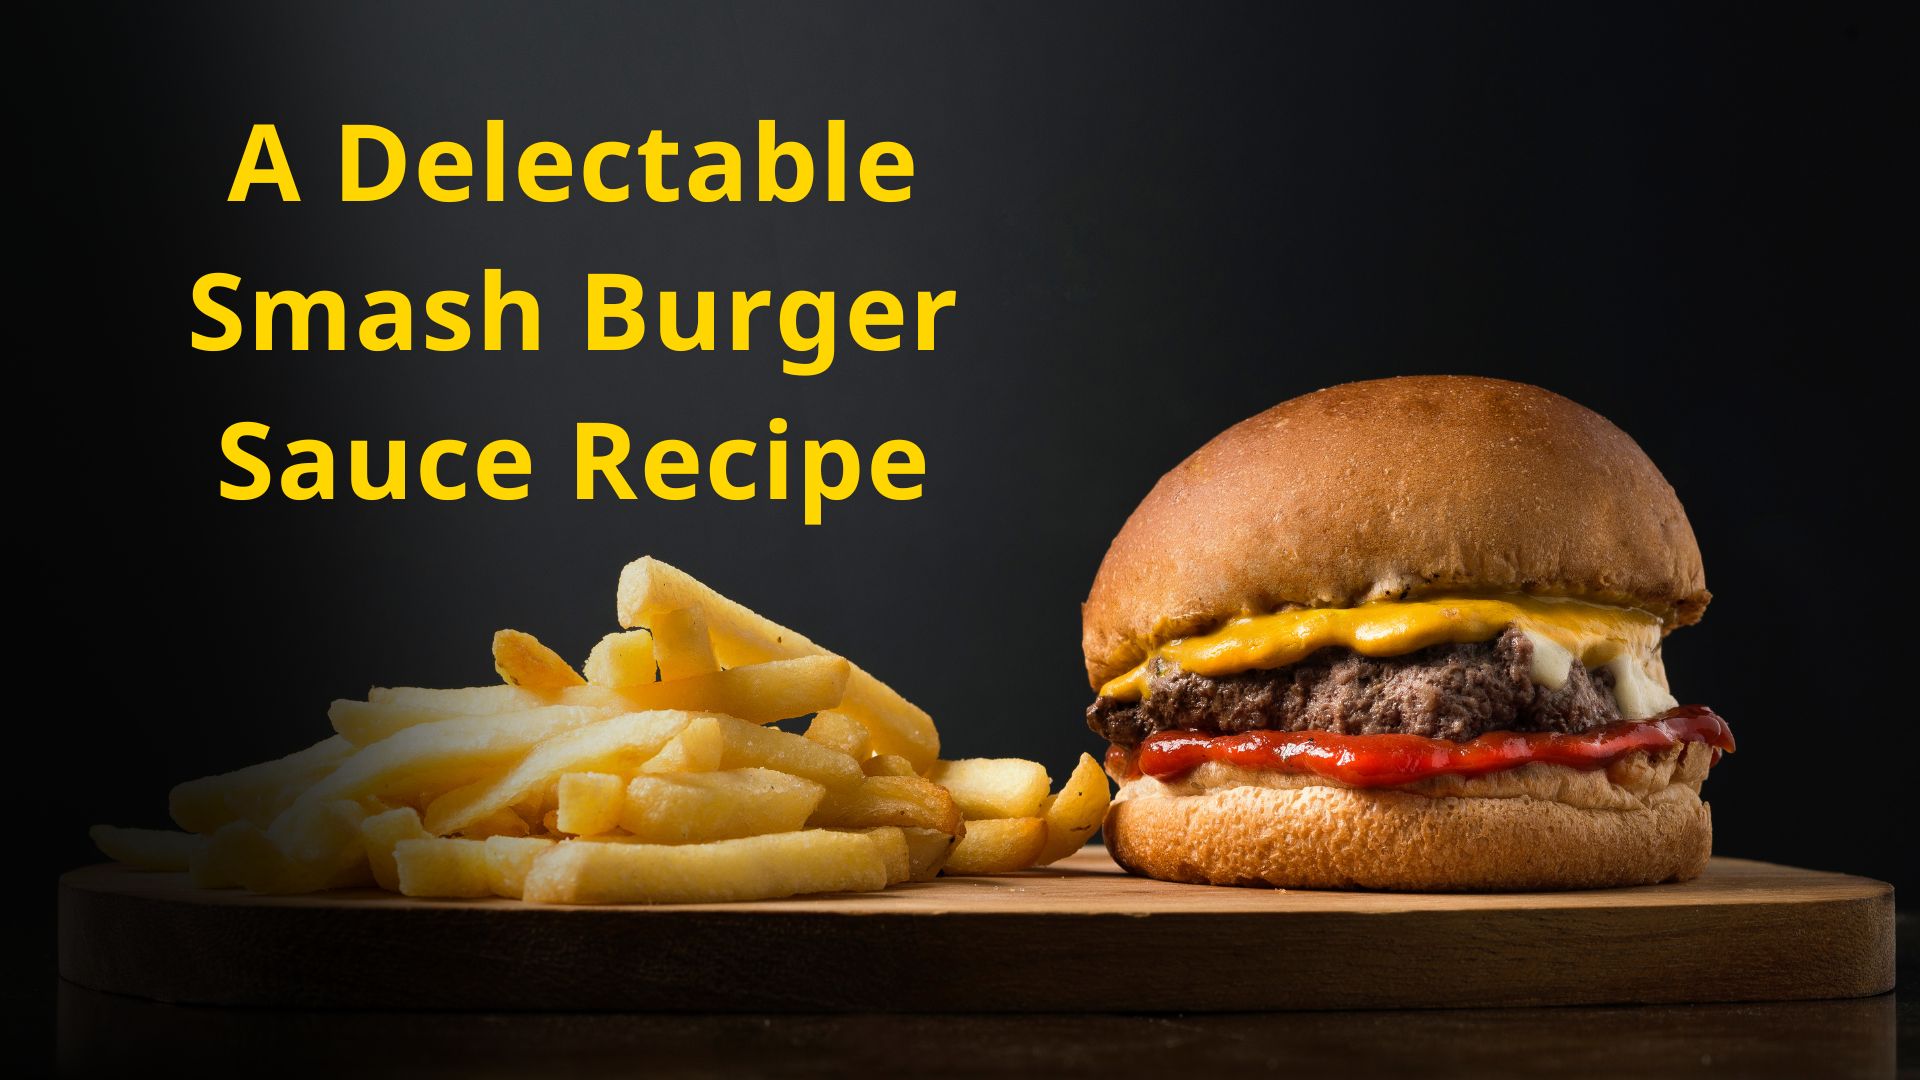 A Delectable Smash Burger Sauce Recipe